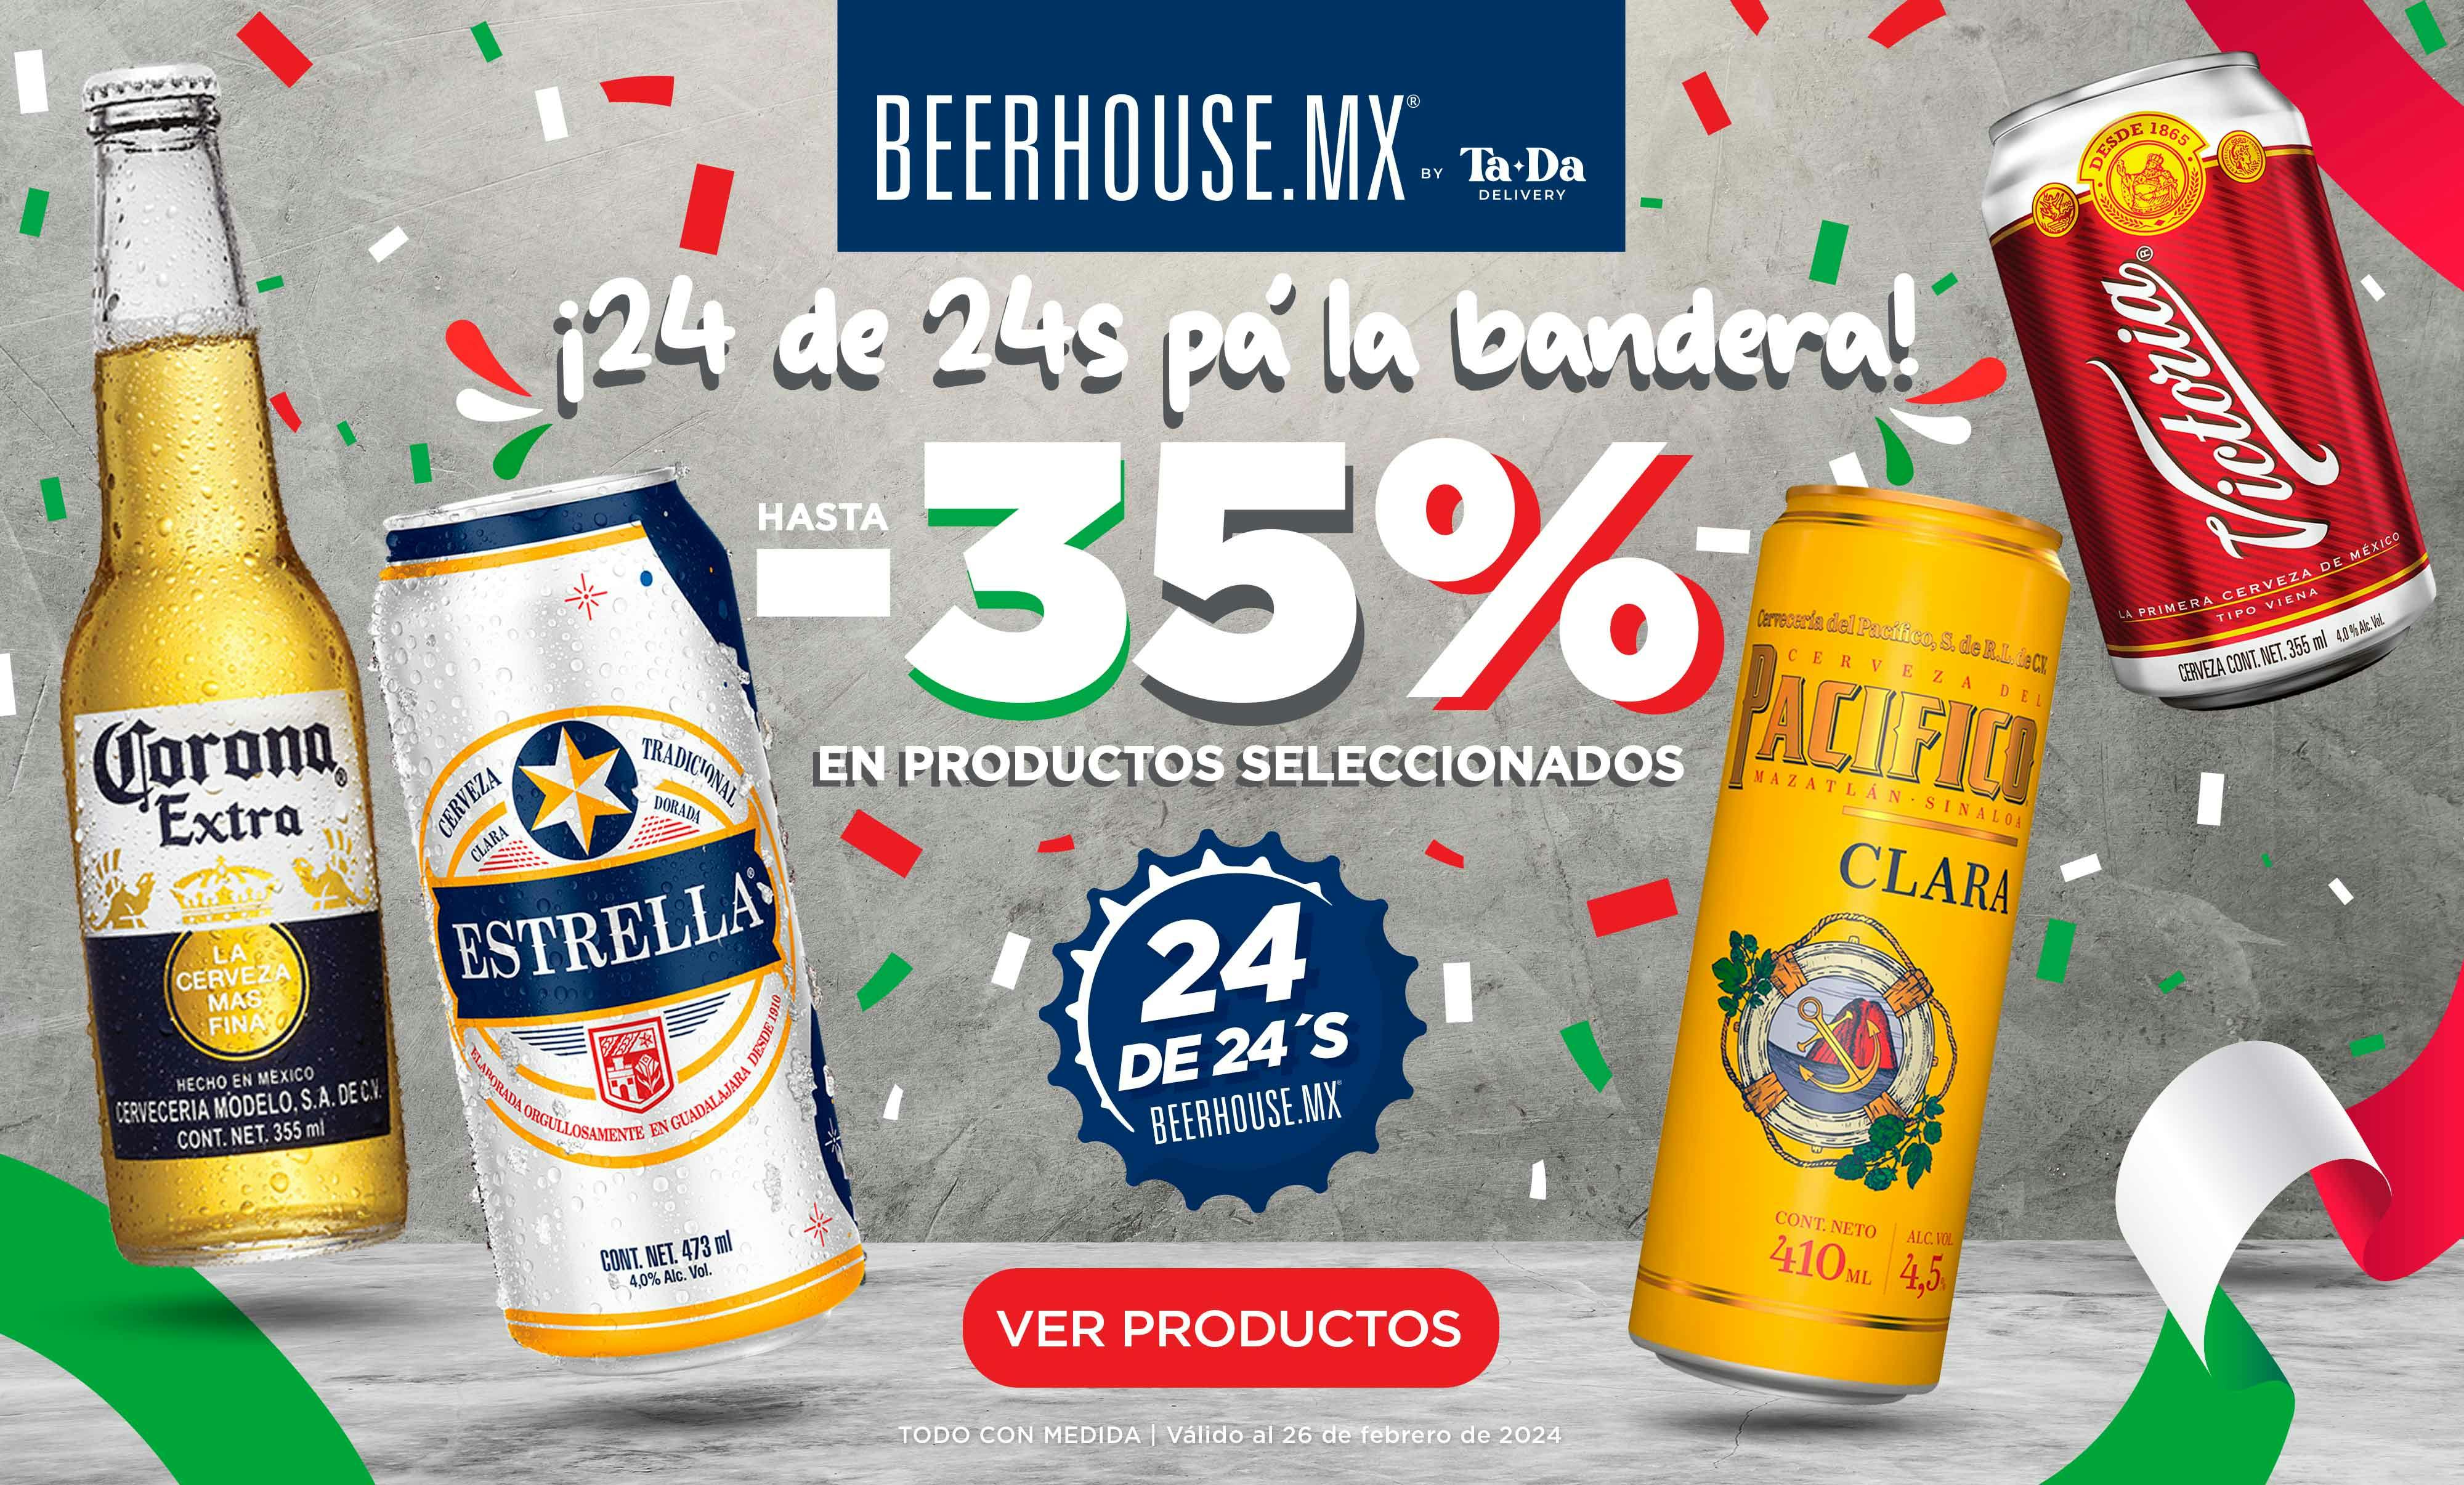 (c) Beerhouse.mx